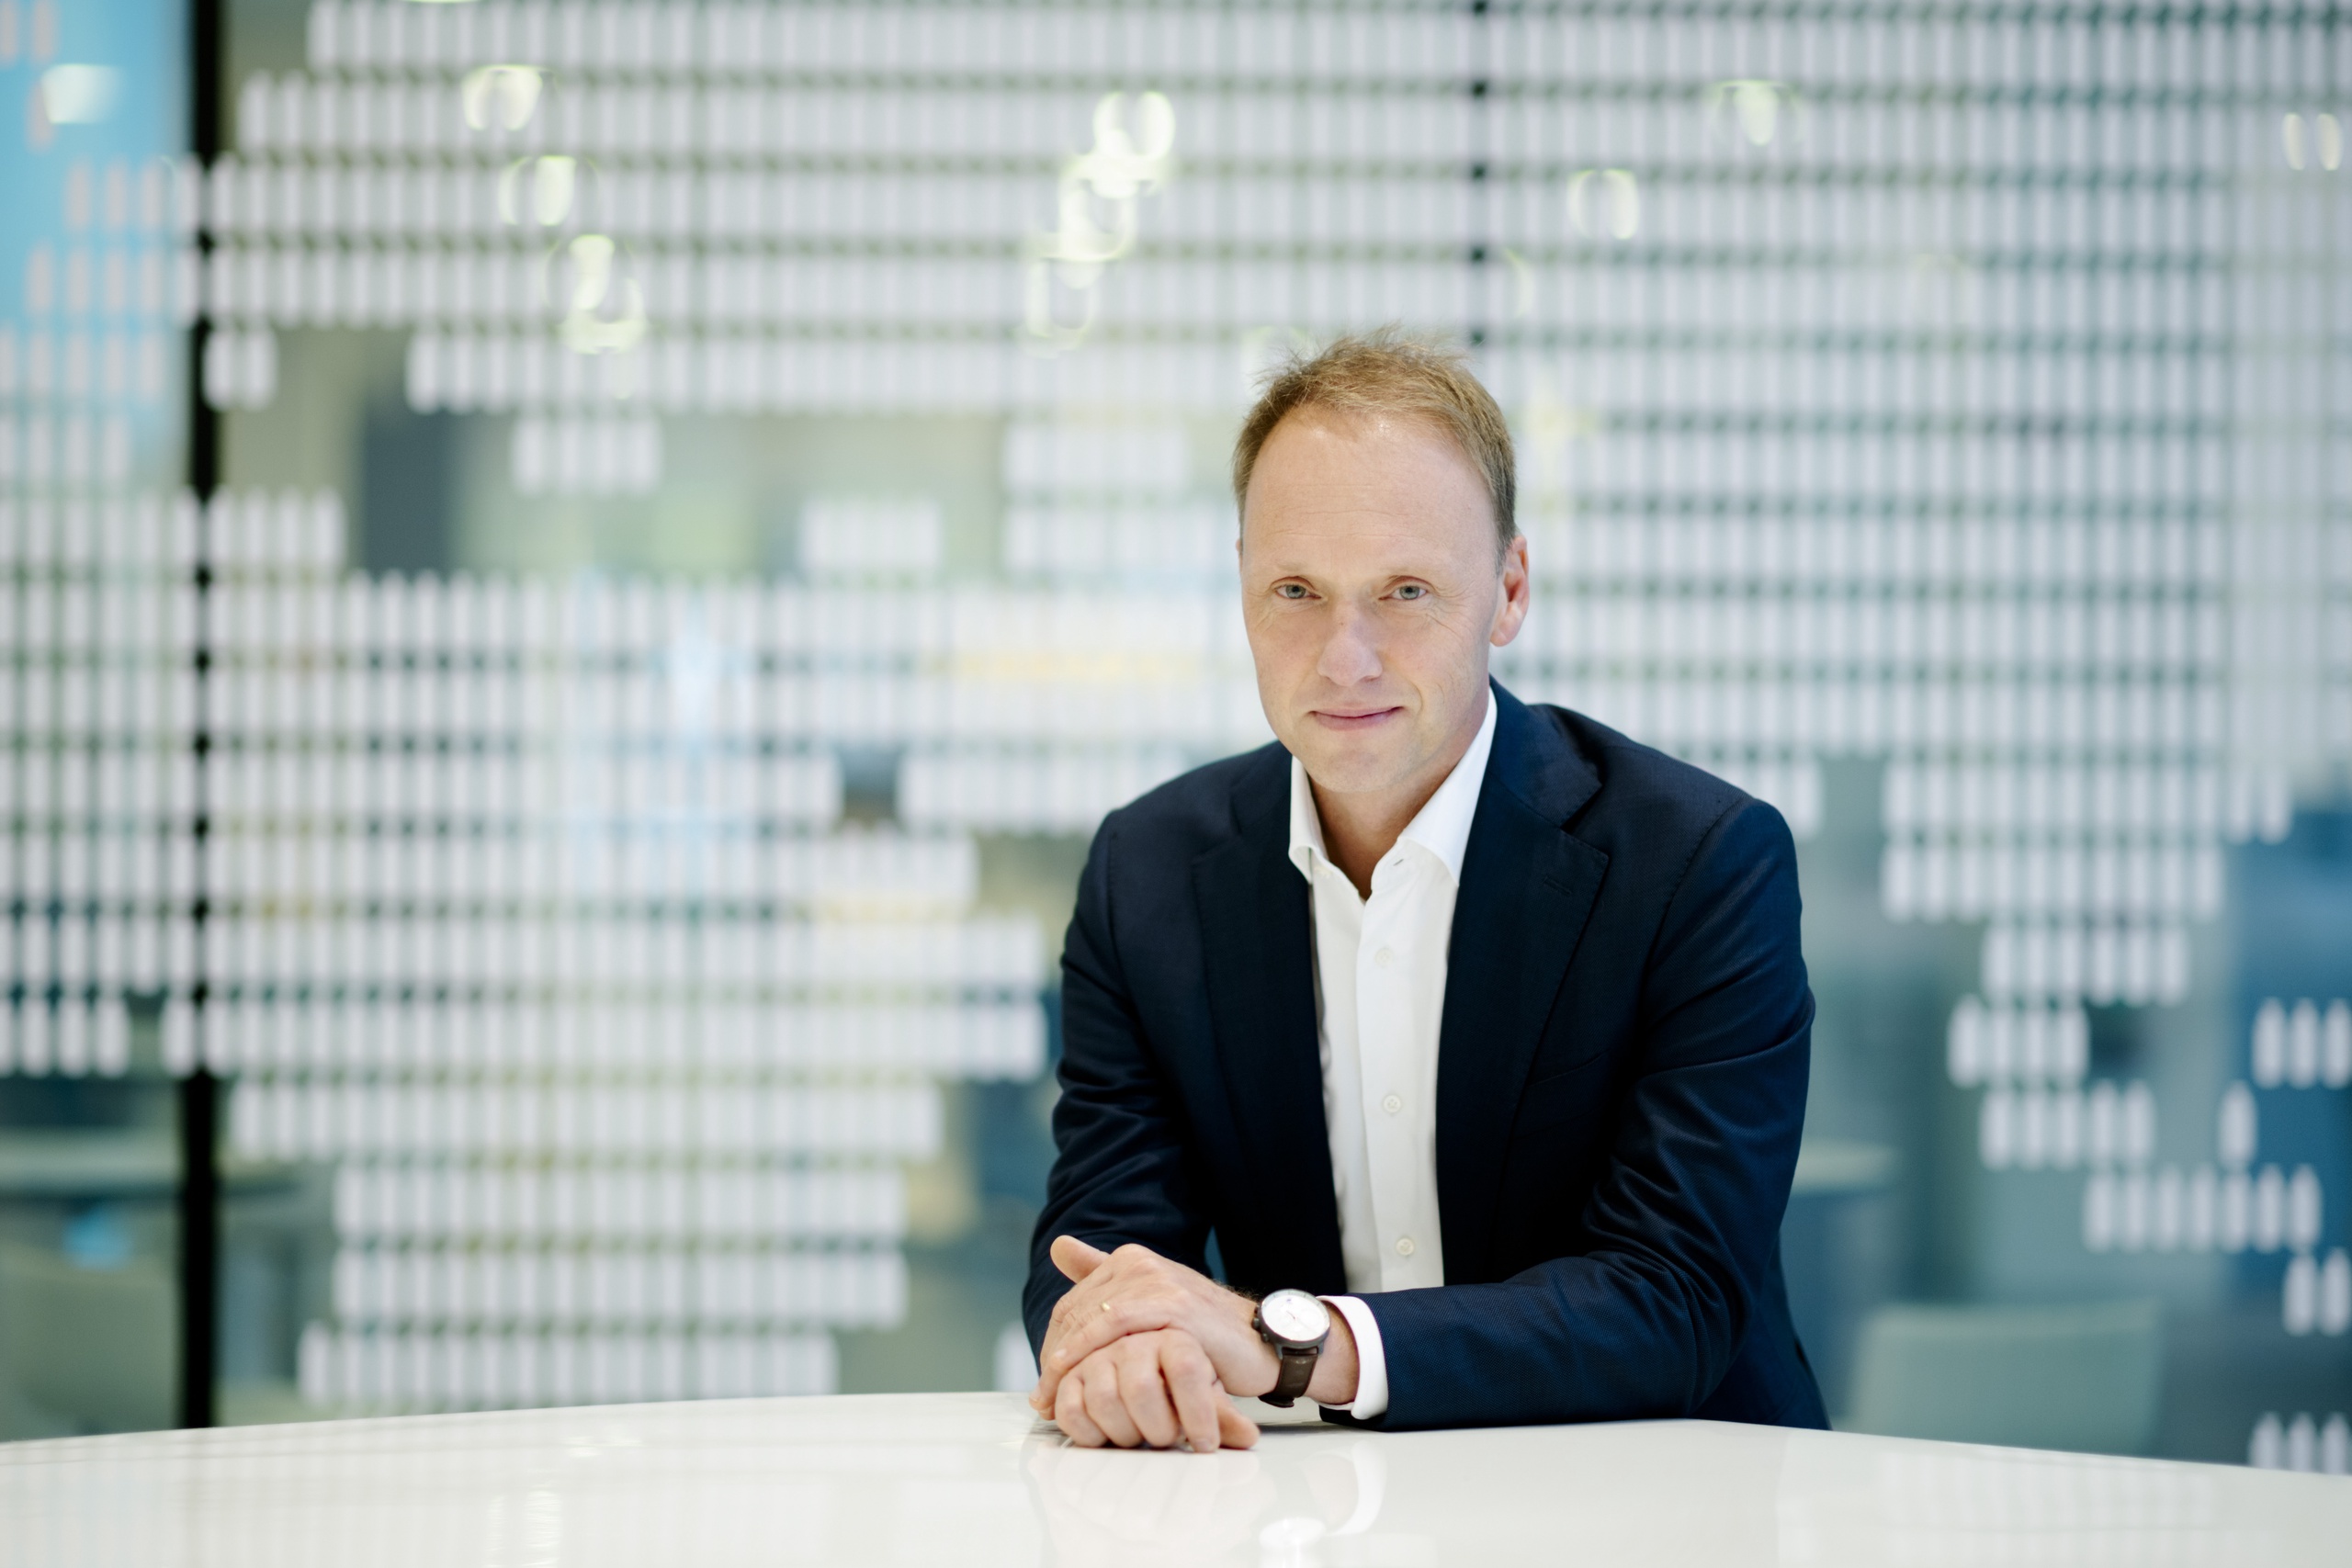 Unilever heeft vandaag de benoeming aangekondigd van Hein Schumacher als haar nieuwe Chief Executive Officer. Schumacher volgt Alan Jope op , die in september 2022 zijn voornemen aankondigde om met pensioen te gaan bij Unilever. 